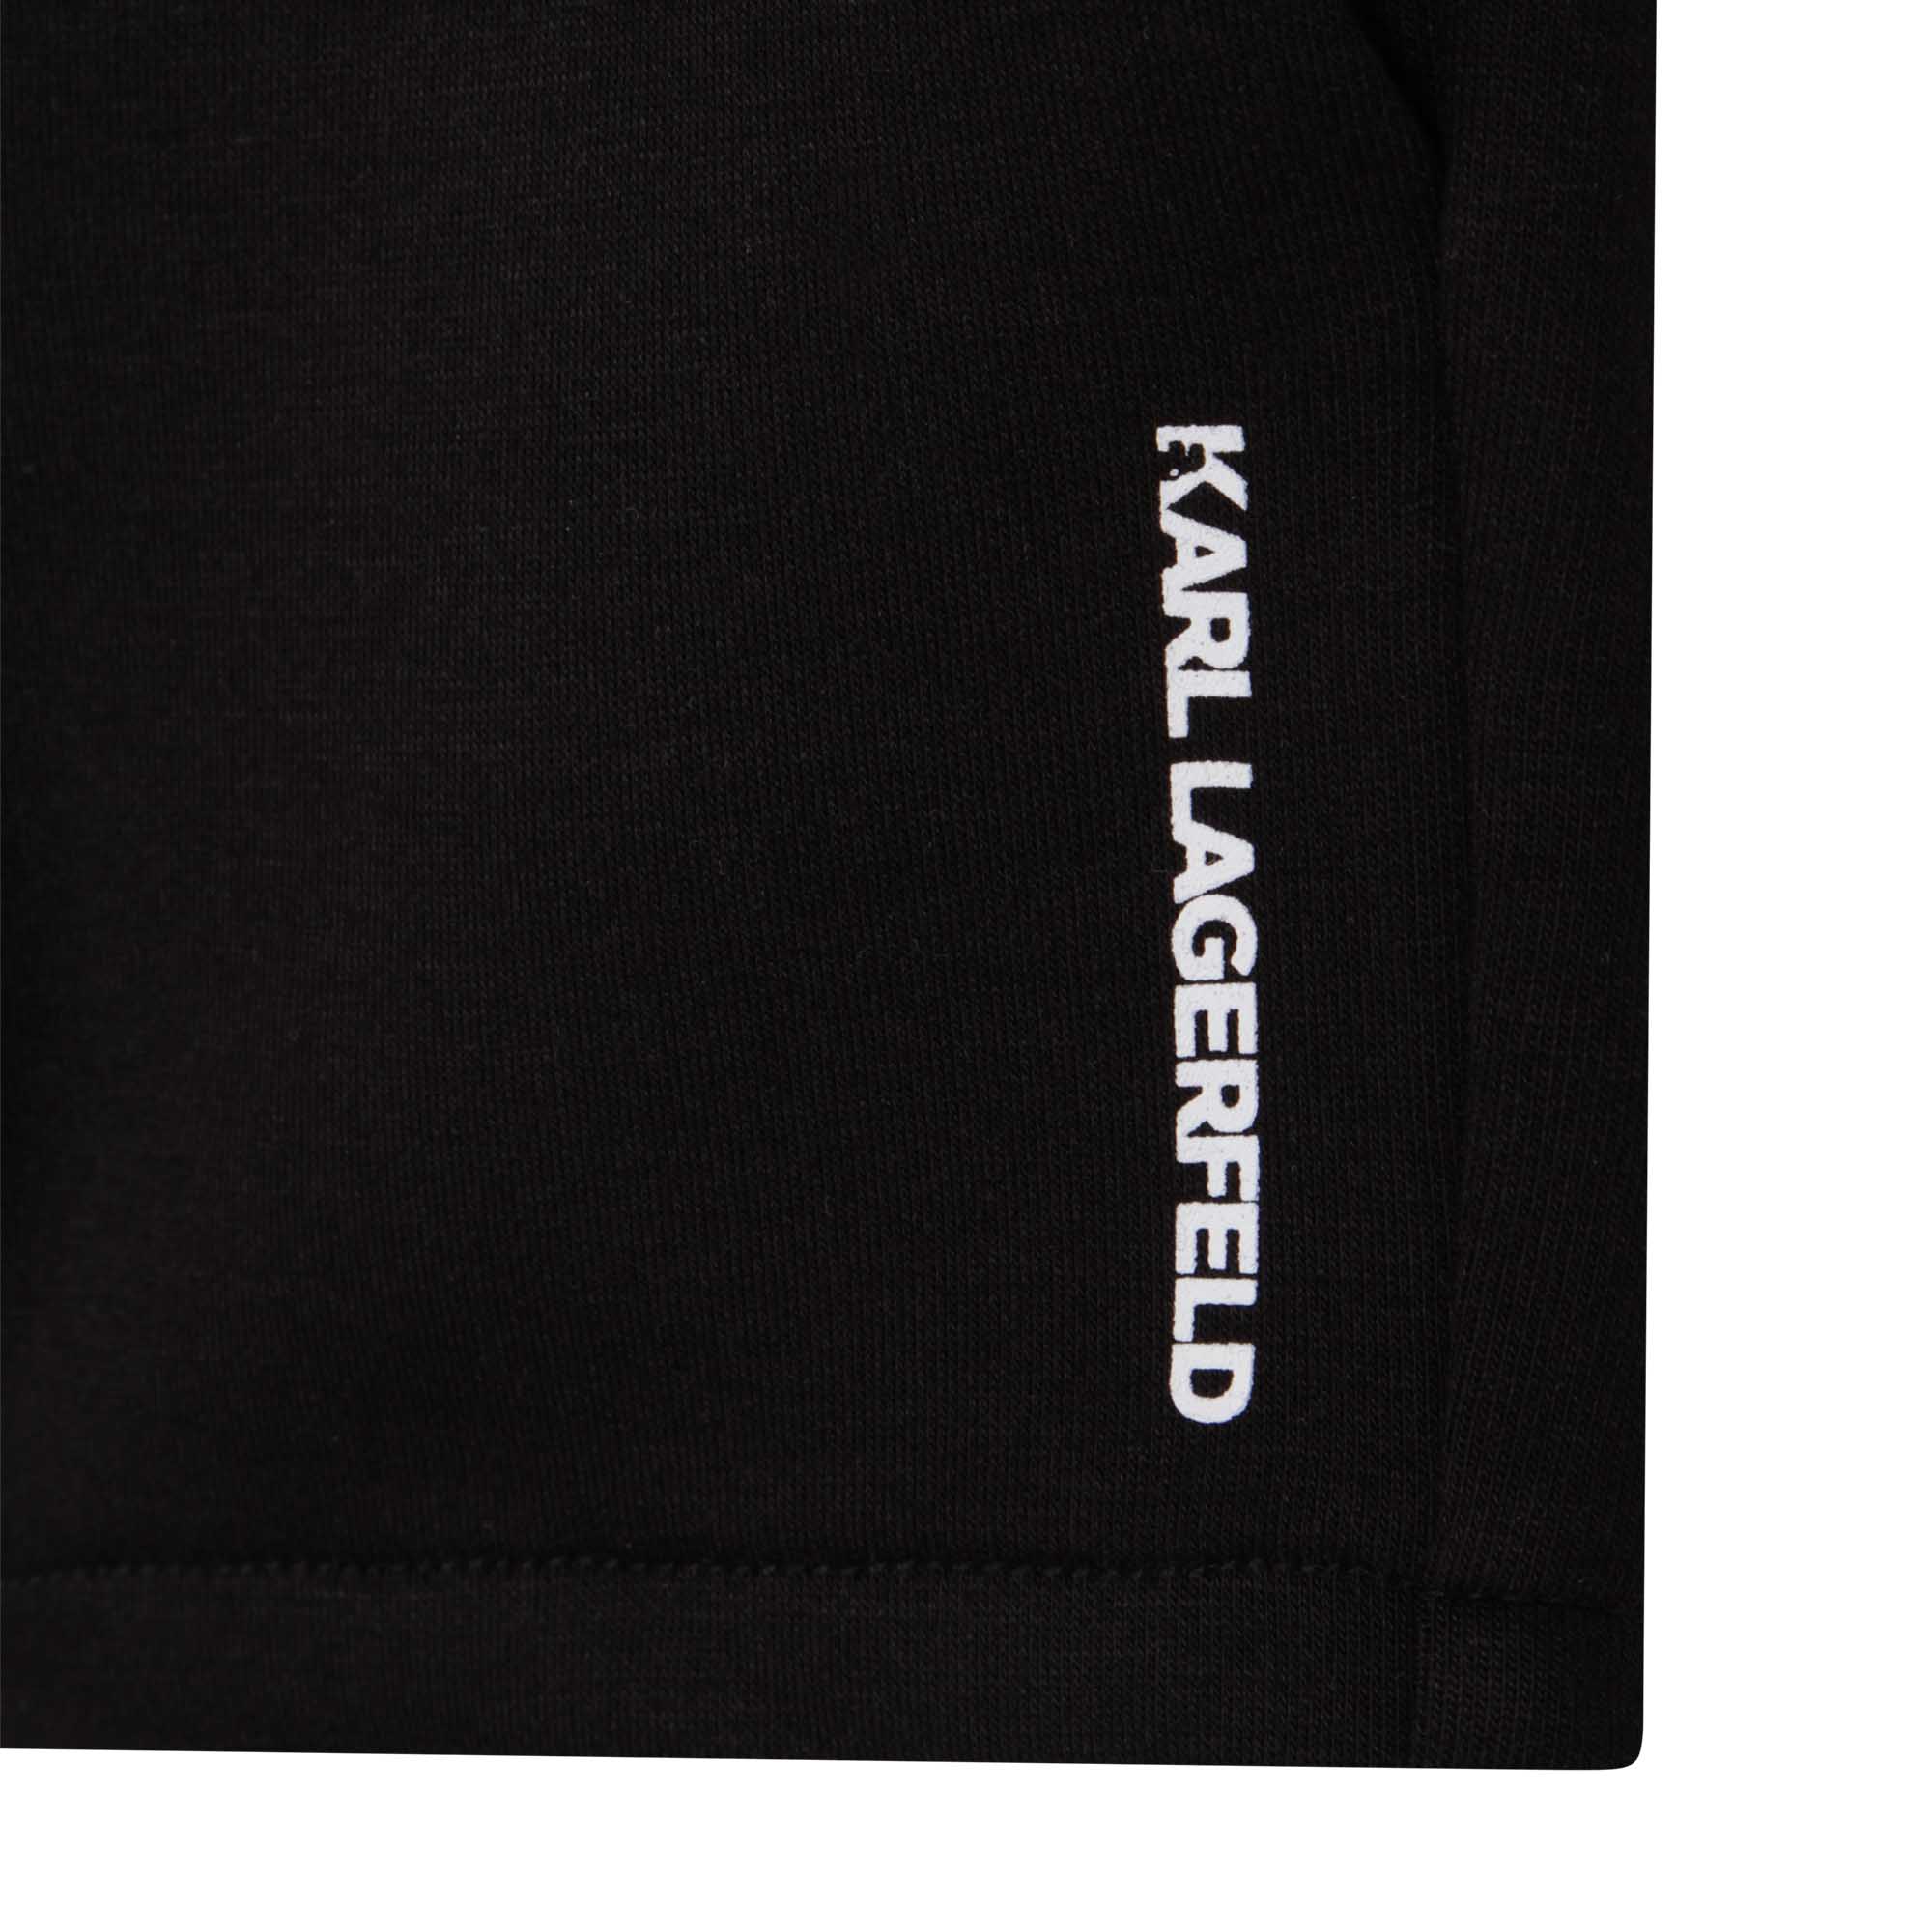 Ensemble T-shirt et short KARL LAGERFELD KIDS pour GARCON